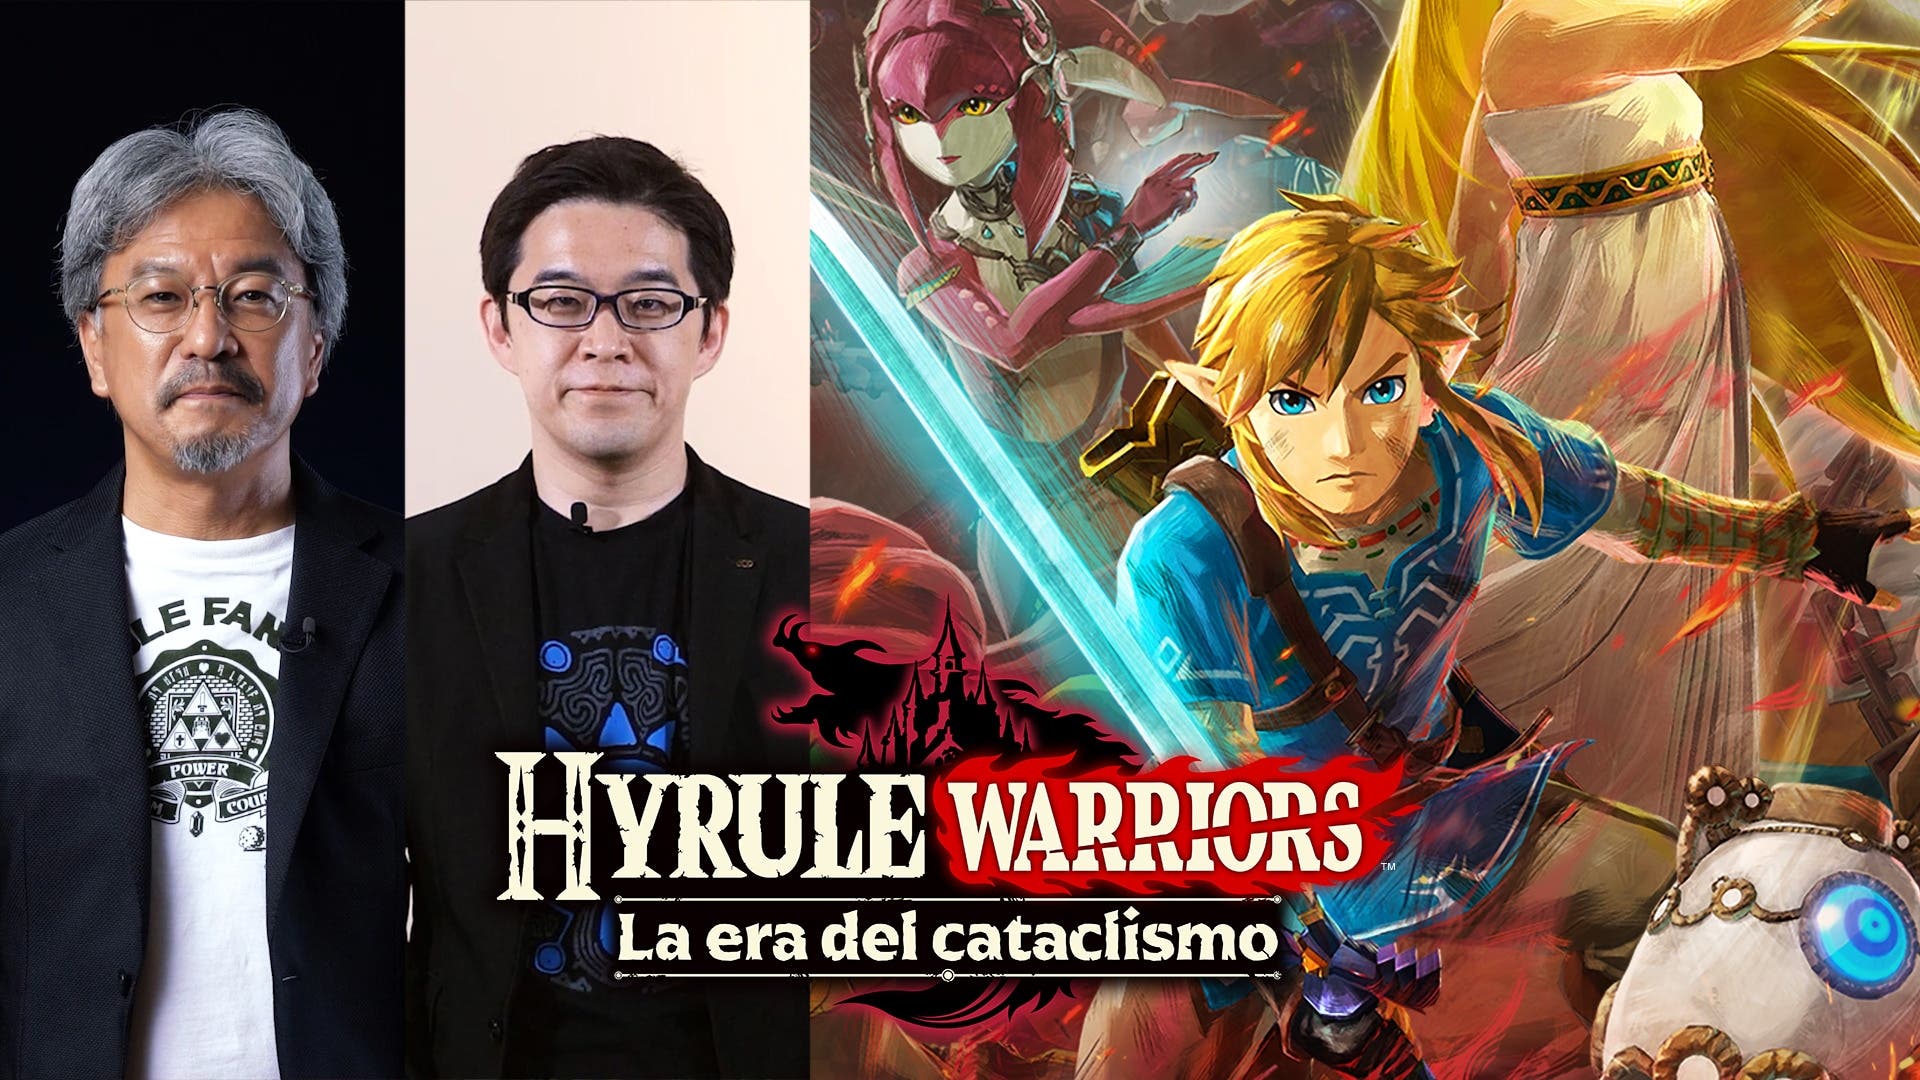 Hyrule Warriors: La era del cataclismo se lanza el 20 de noviembre